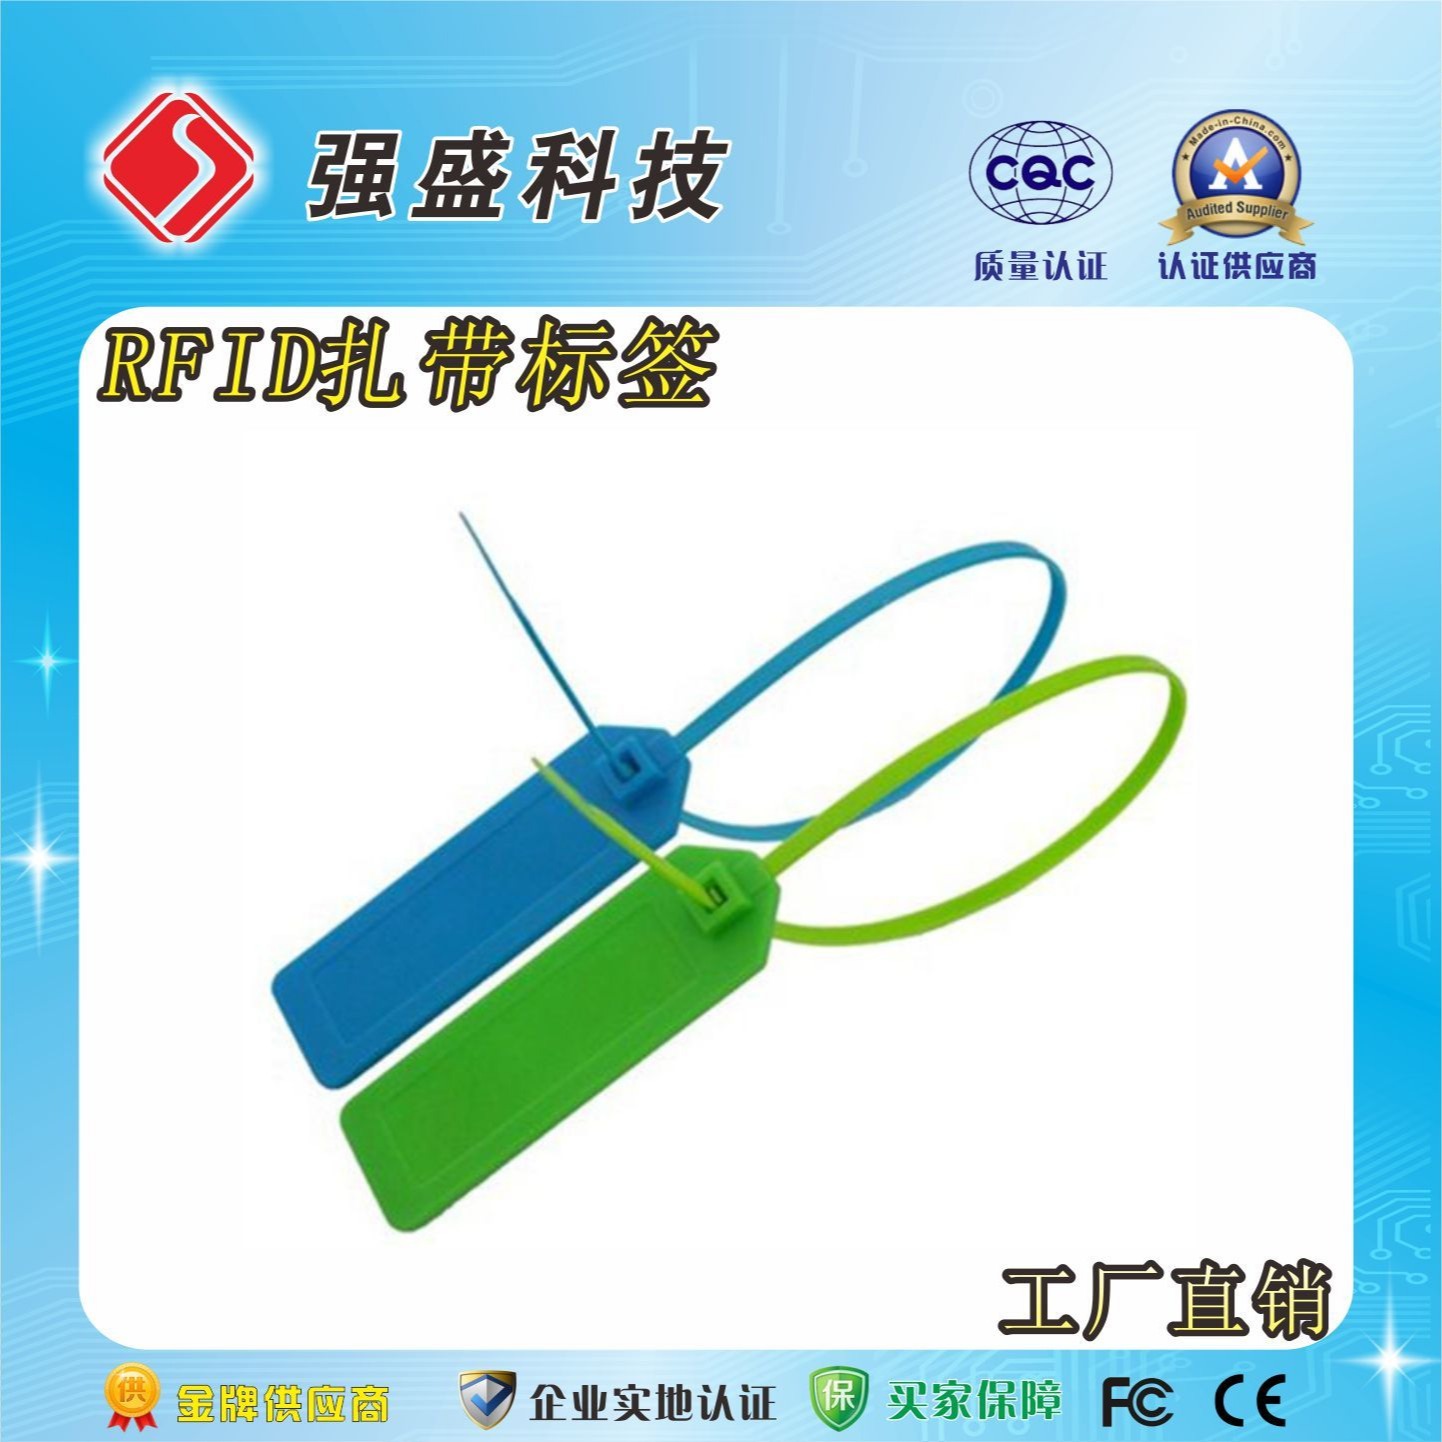 电缆管理扎带电子标签 高频扎带标签 rfid电缆标签图片